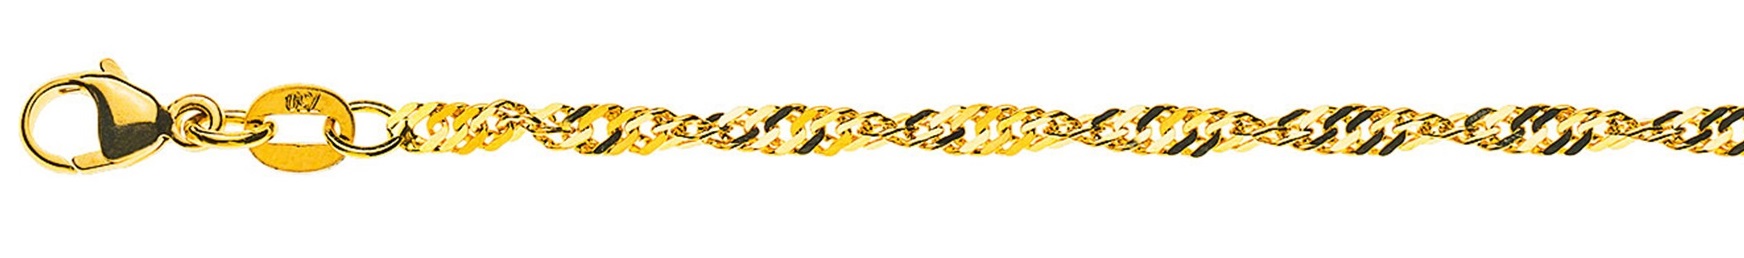 AURONOS Prestige Necklace Yellow Gold 18K Singapore Chain 50cm 2.4mm